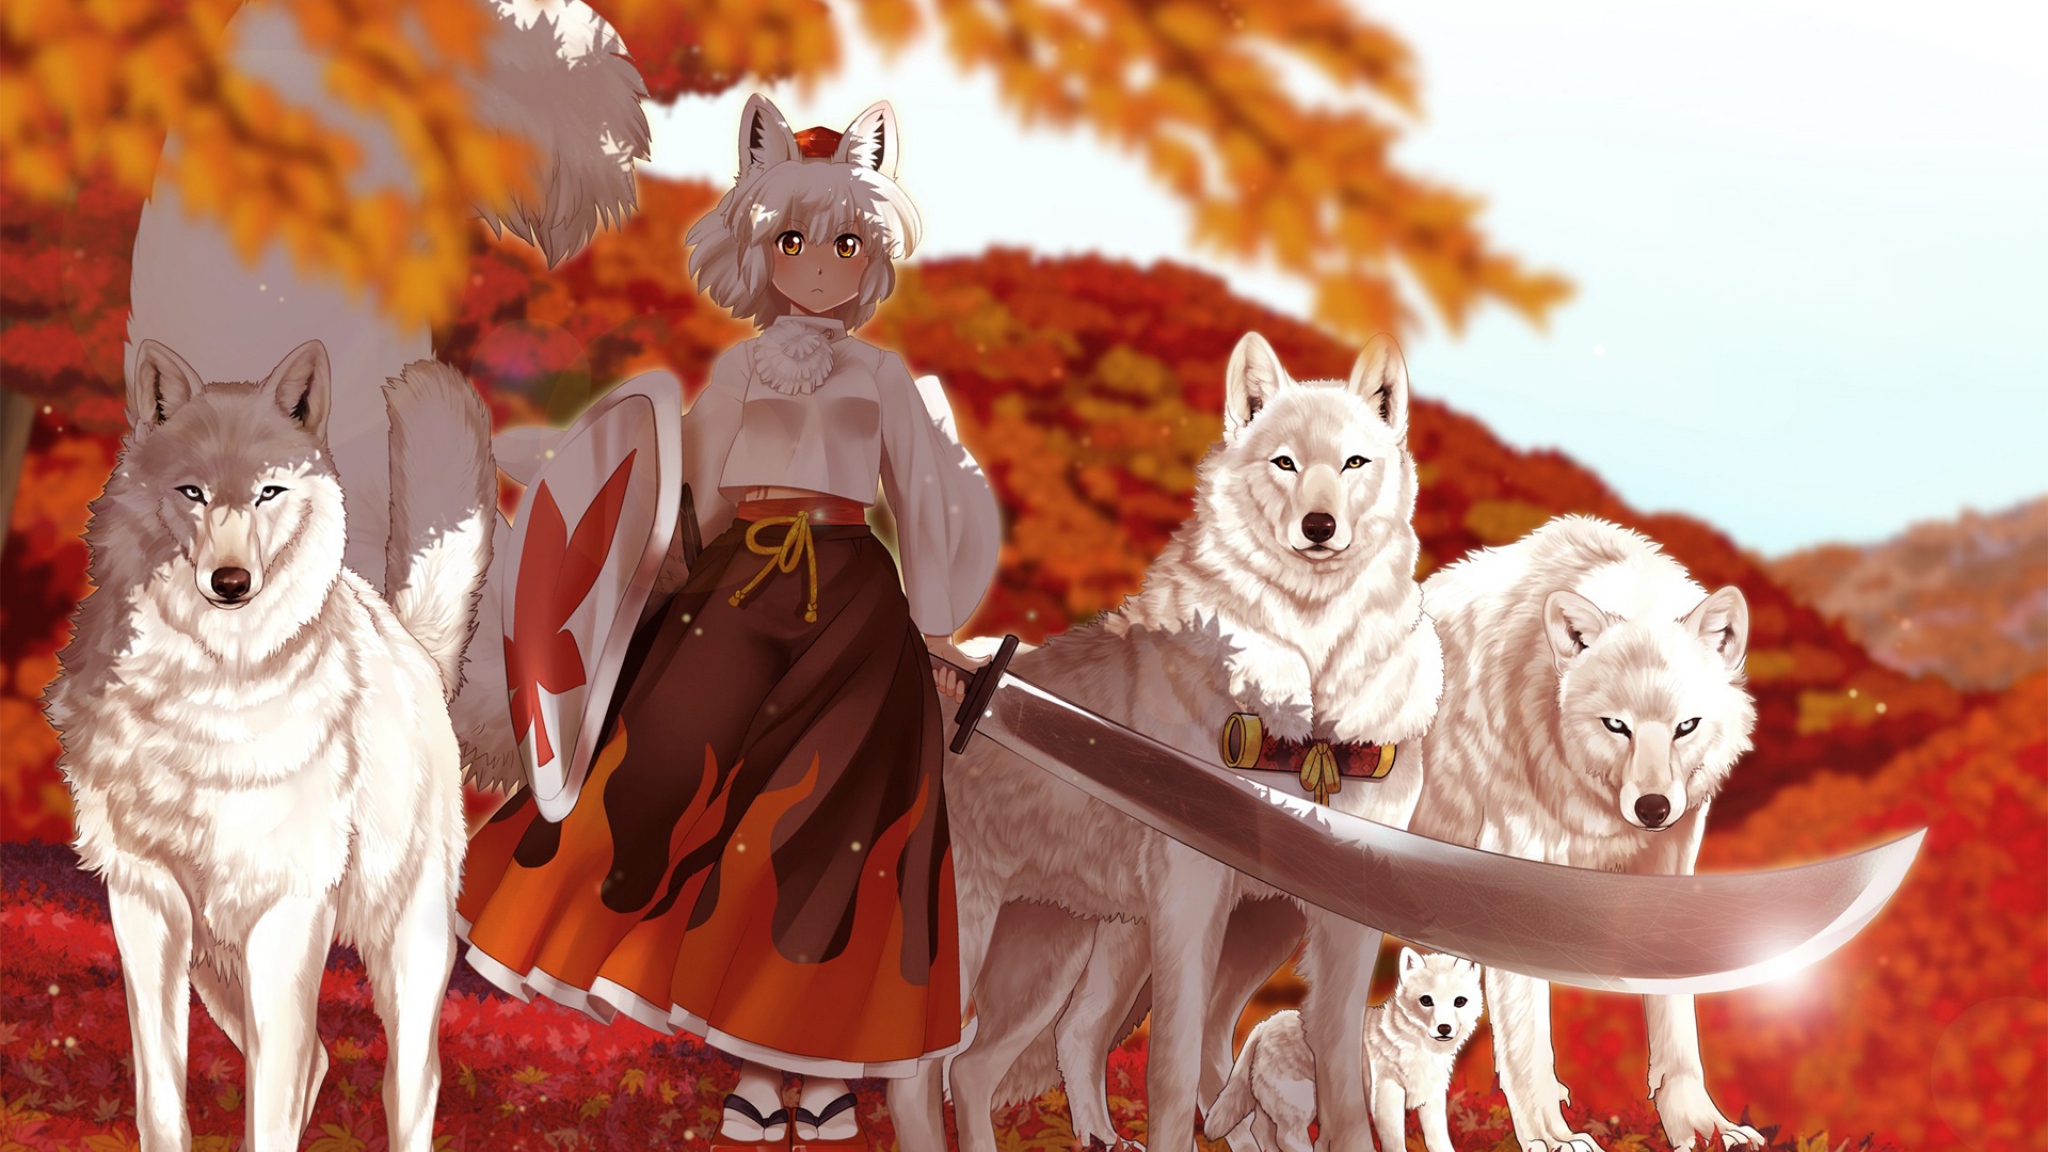 Download Wallpaper 2048x1152 anime girl kimono sword wolf autumn